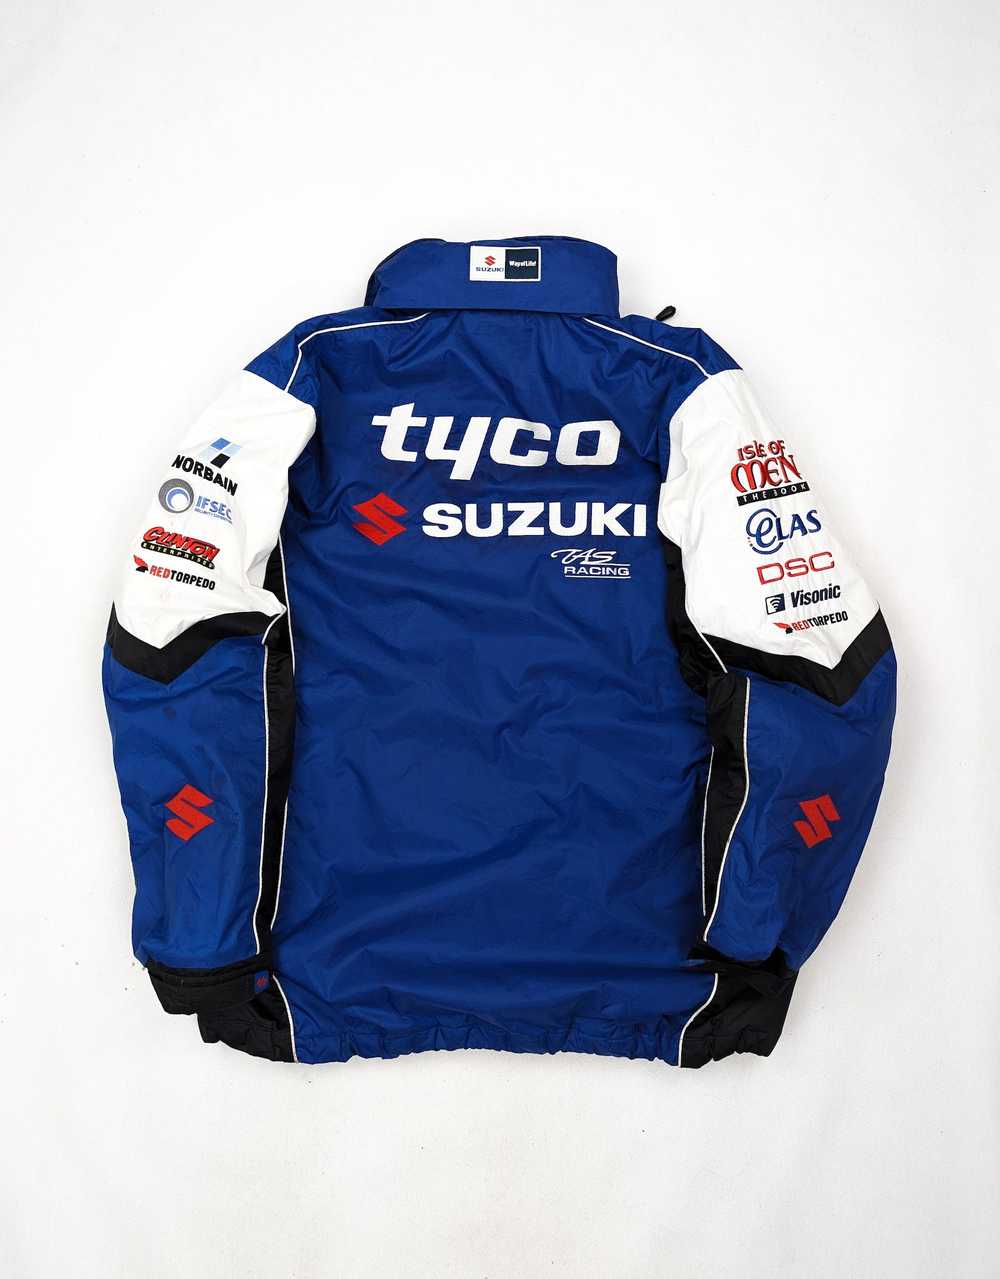 Racing Suzuki tyco rare racing winter jacket L - image 2